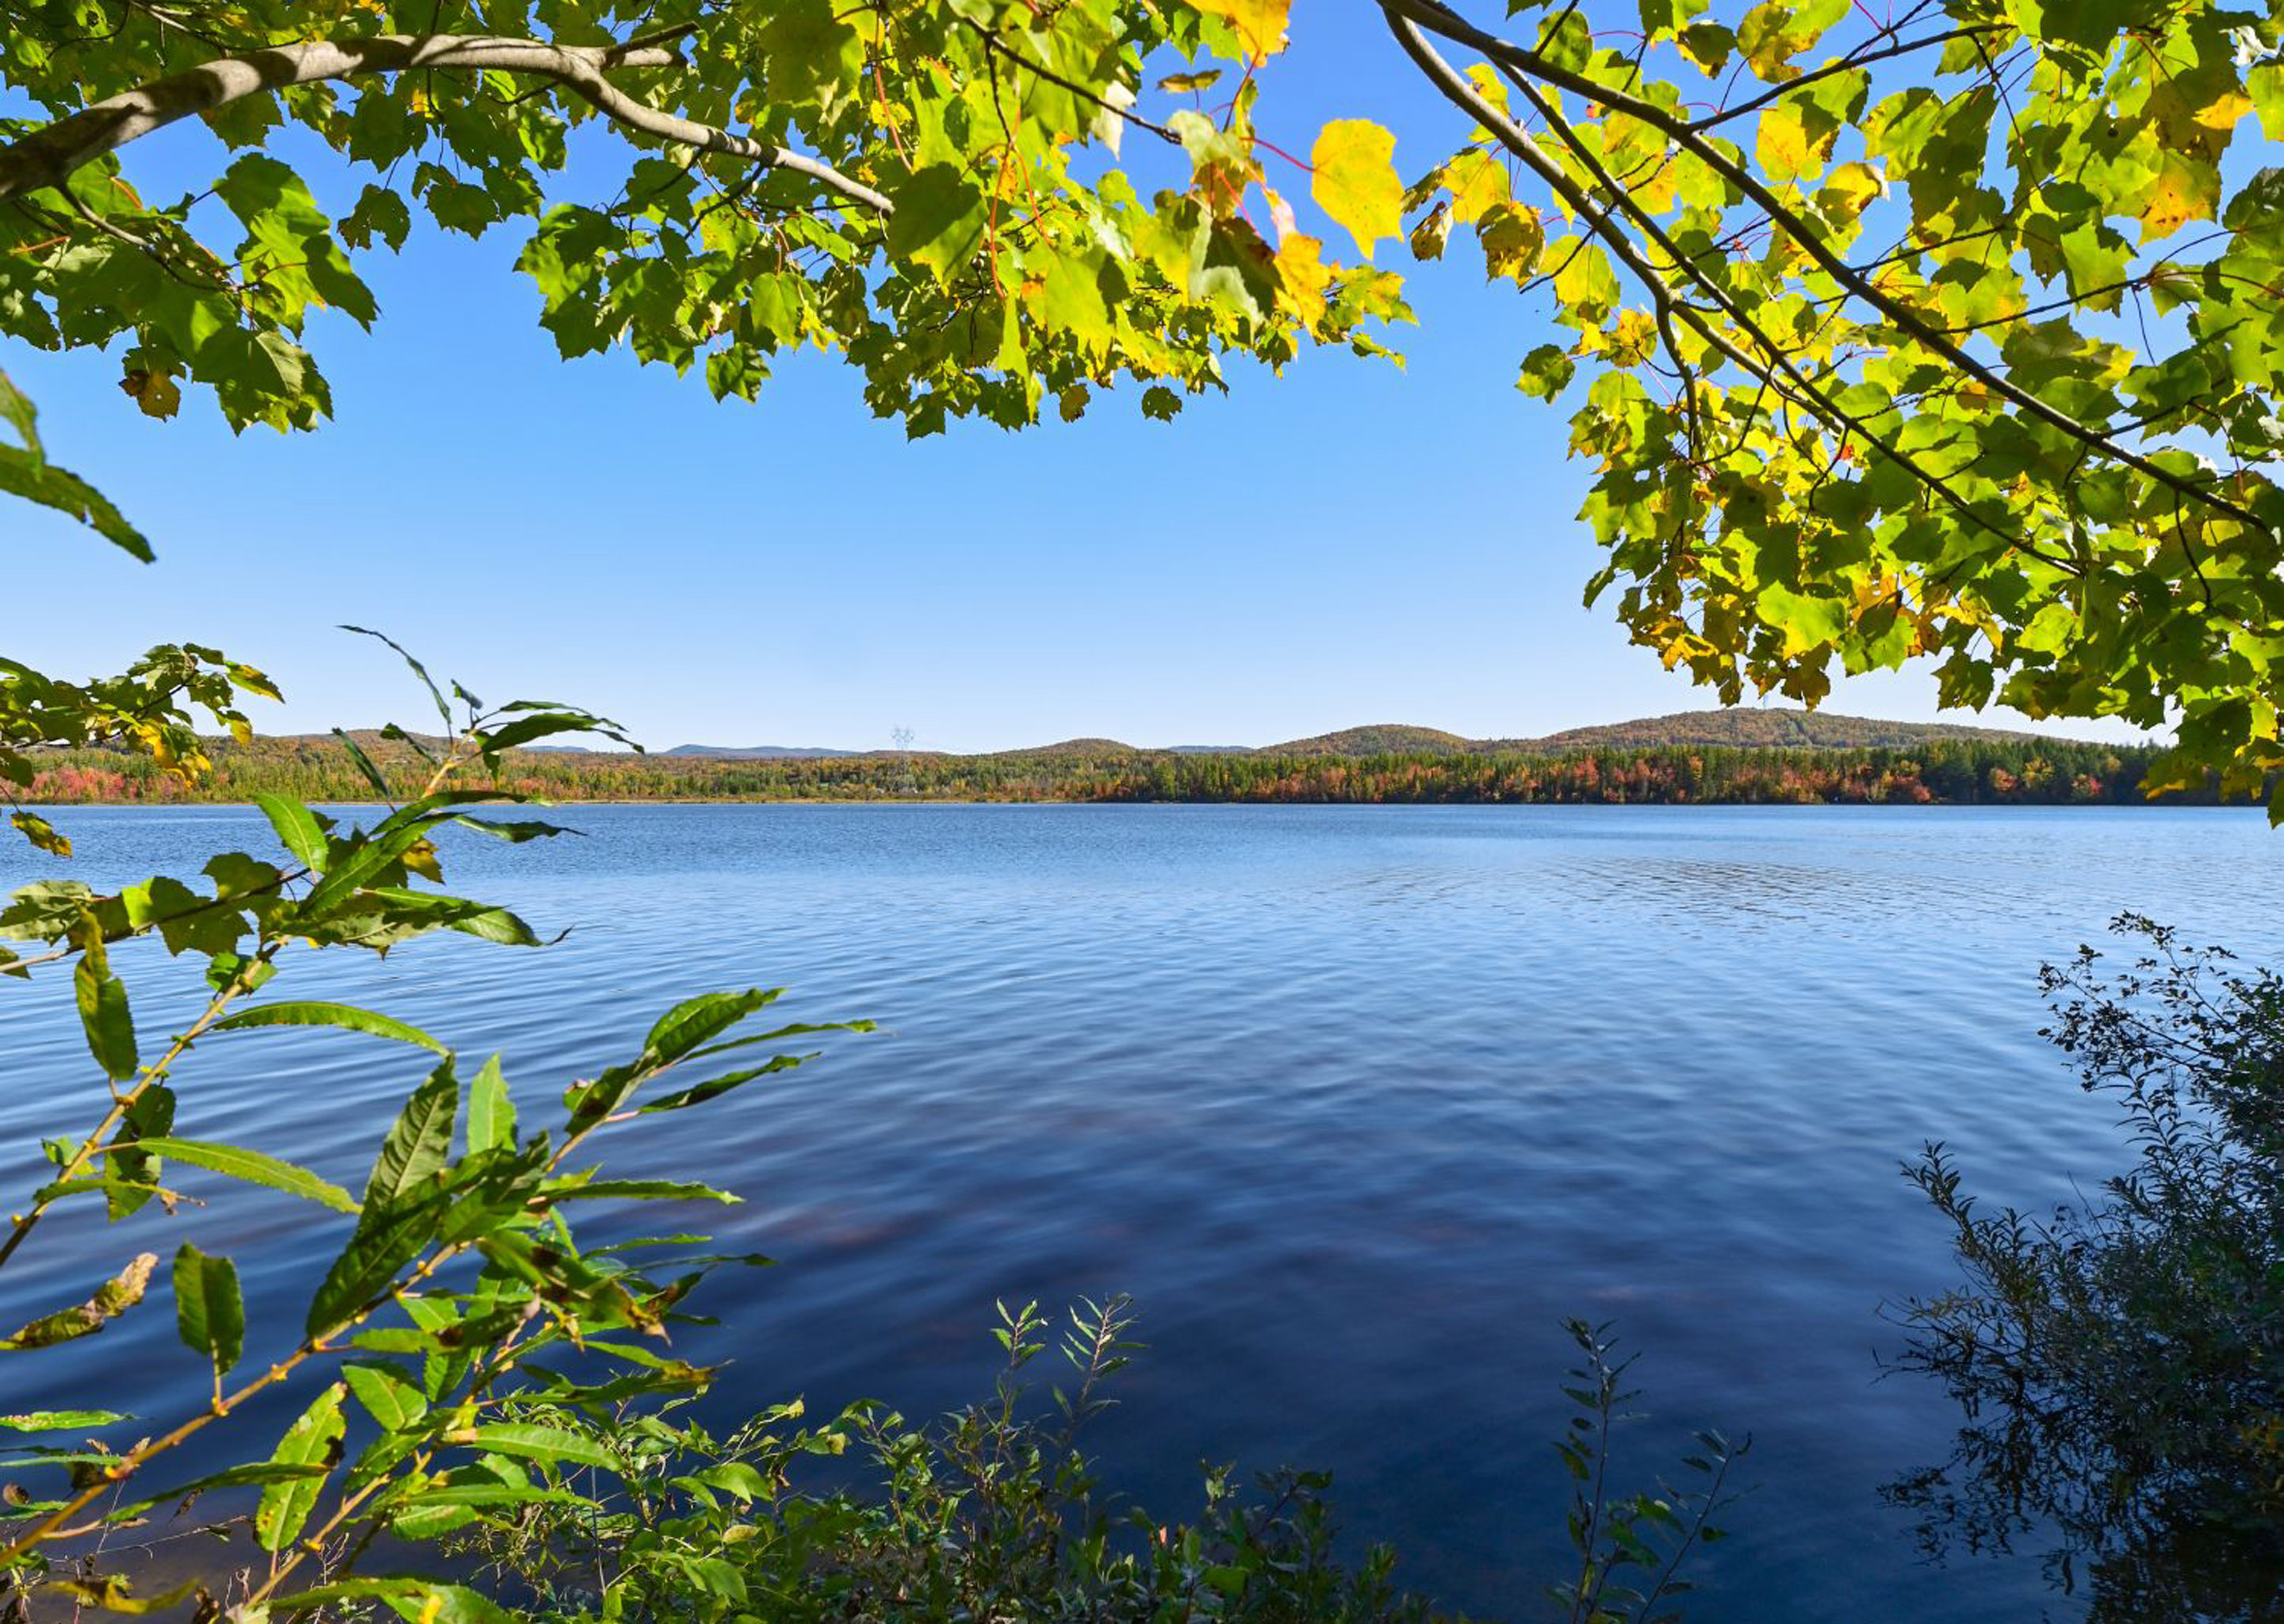 Le lac Saint-Charles est le plus grand réservoir d’eau potable de l’agglomération. Il alimente plus de 300 000 citoyens de Québec.